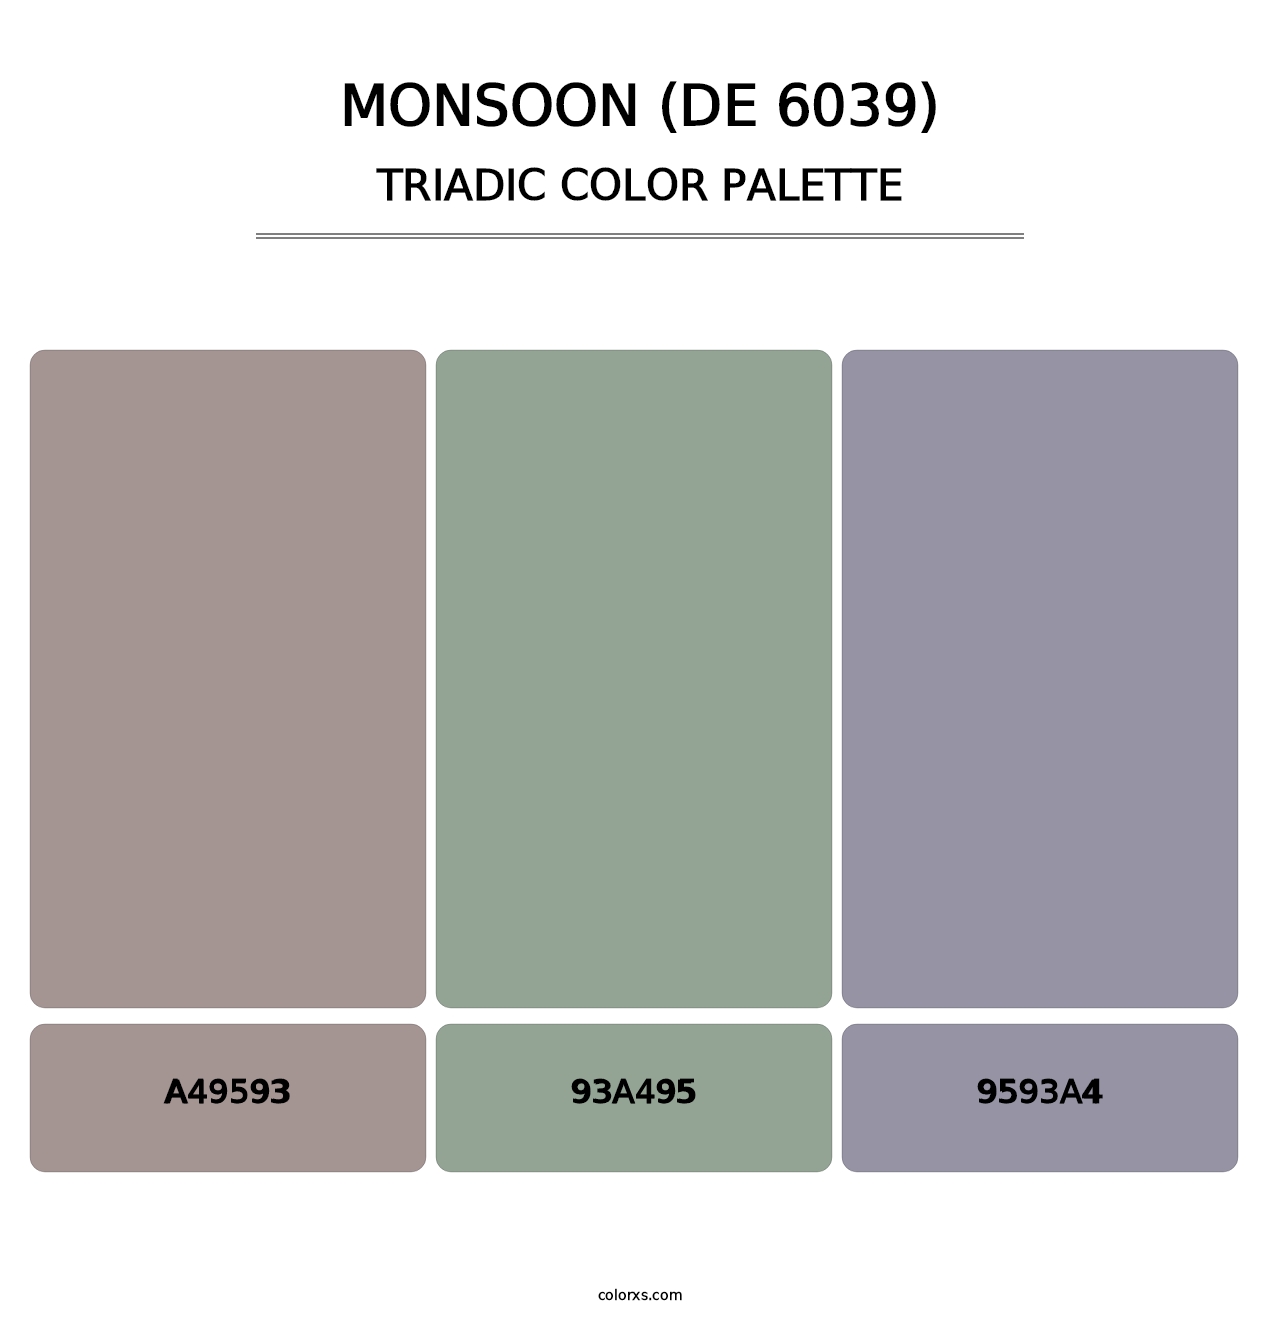 Monsoon (DE 6039) - Triadic Color Palette